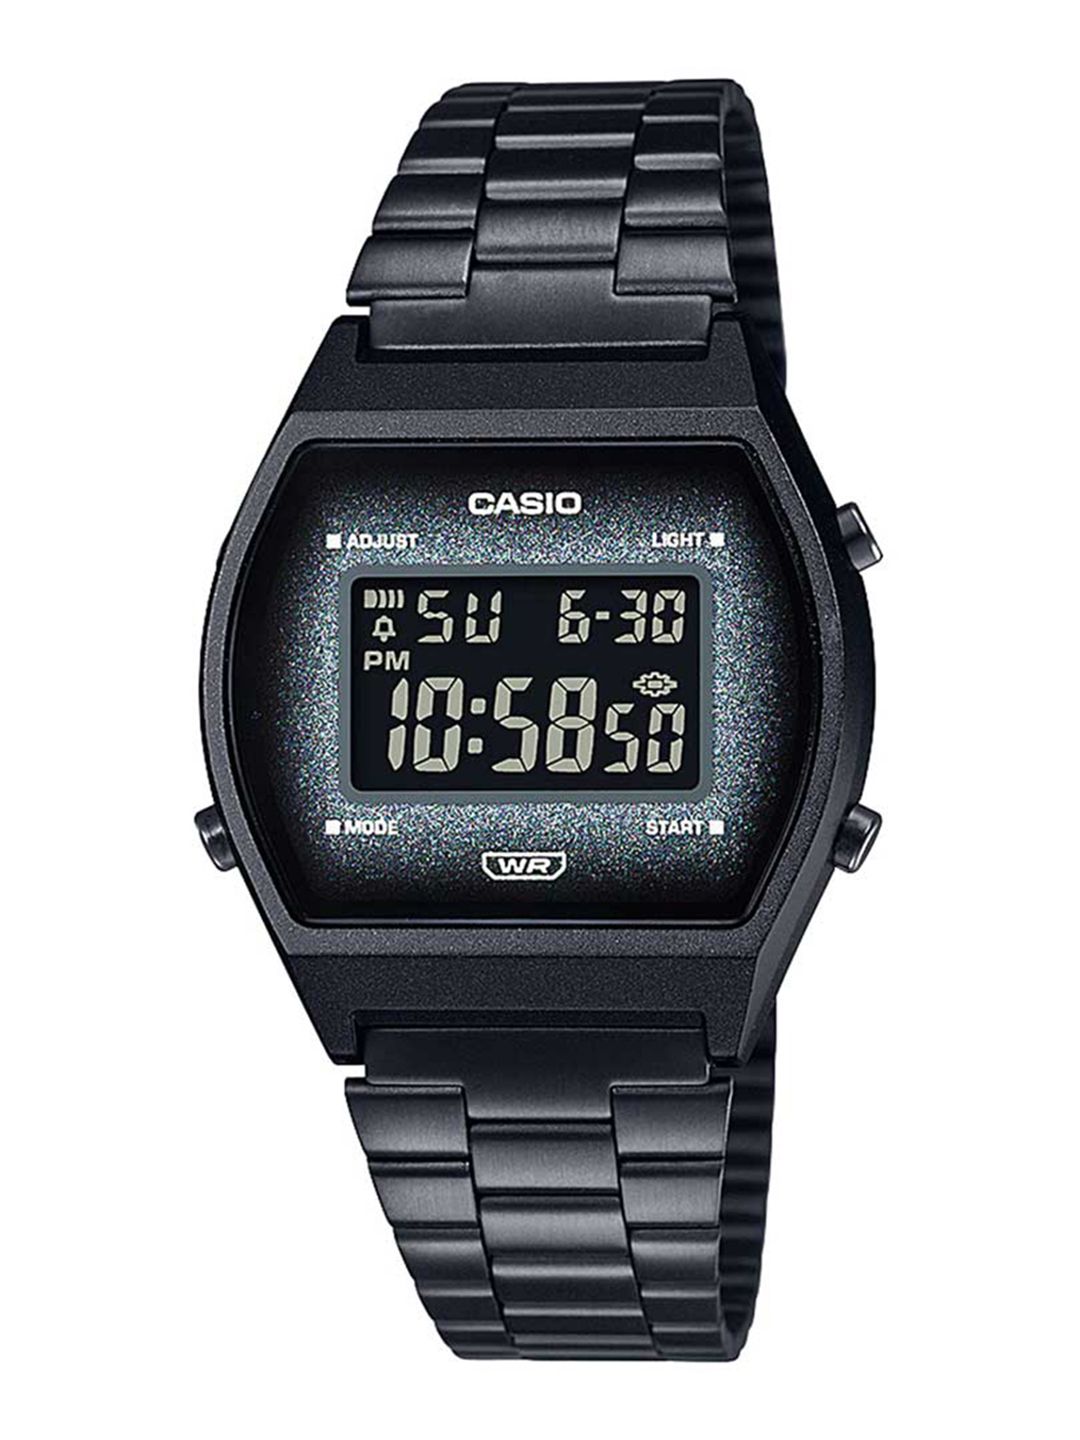 CASIO Unisex Black Digital Watch D185 Price in India